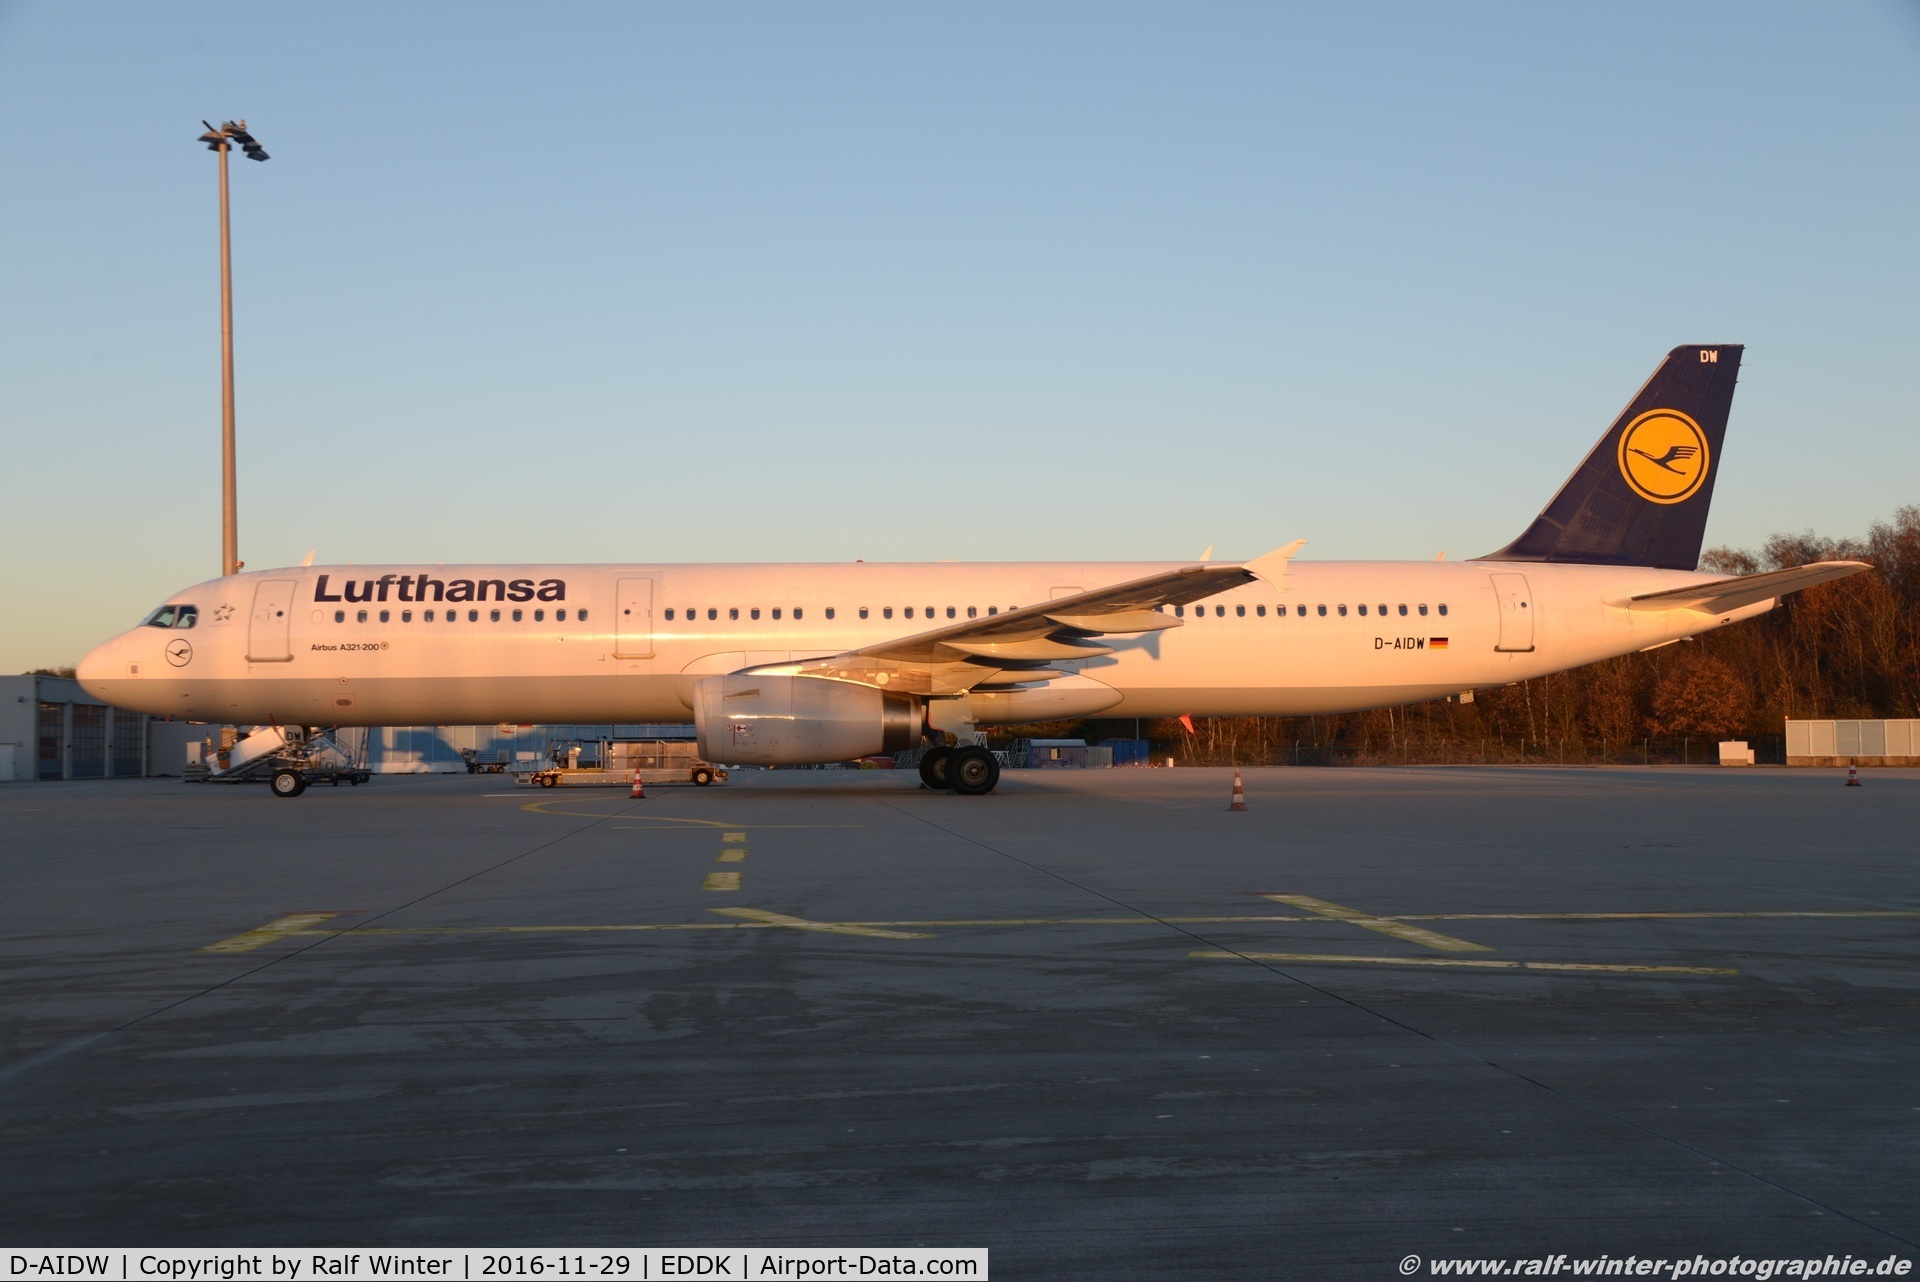 D-AIDW, 2014 Airbus A321-231 C/N 6415, Airbus A321-231 - LH DLH Lufthansa - 6415 - D-AIDW - 29.11.2016 - CGN